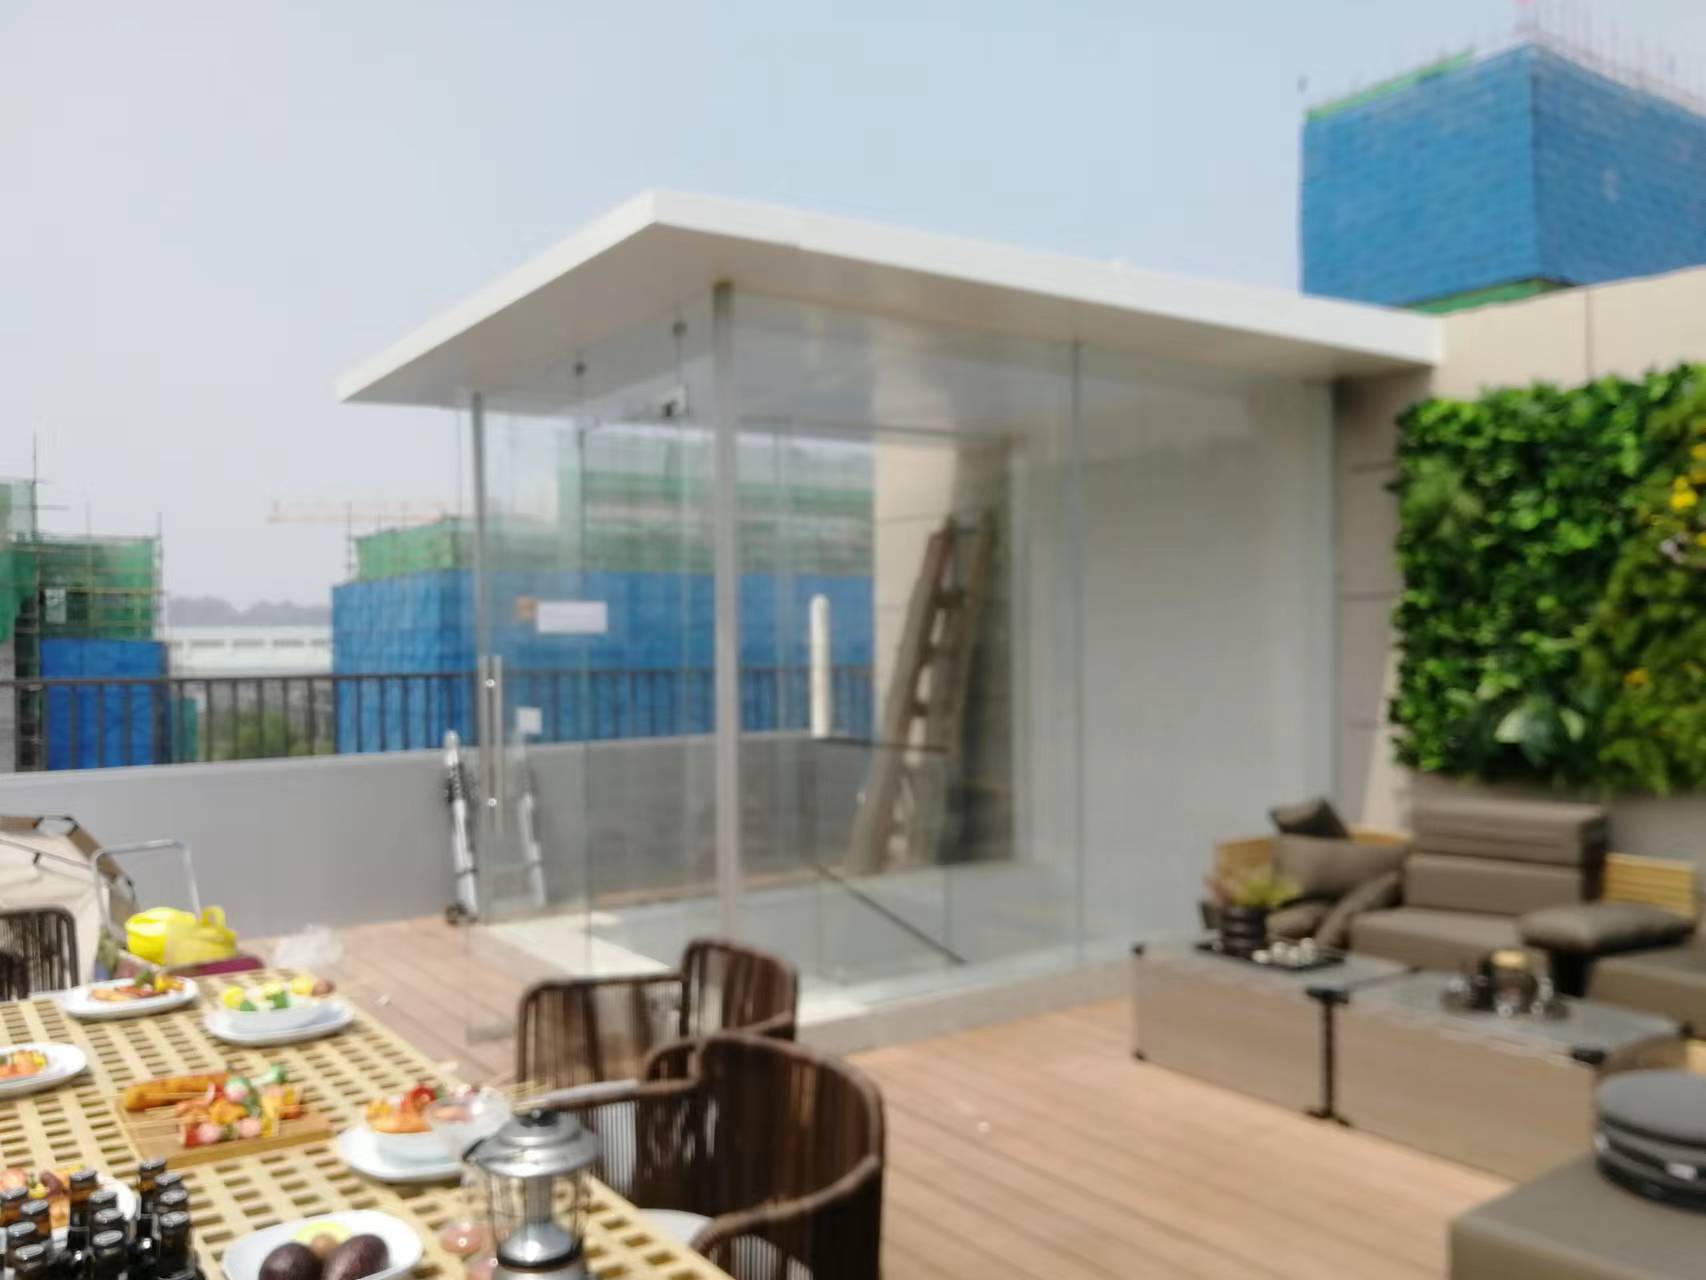 北京钢化玻璃厂定制玻璃房阳光房雨棚护栏扶手围栏外阳台露台别墅